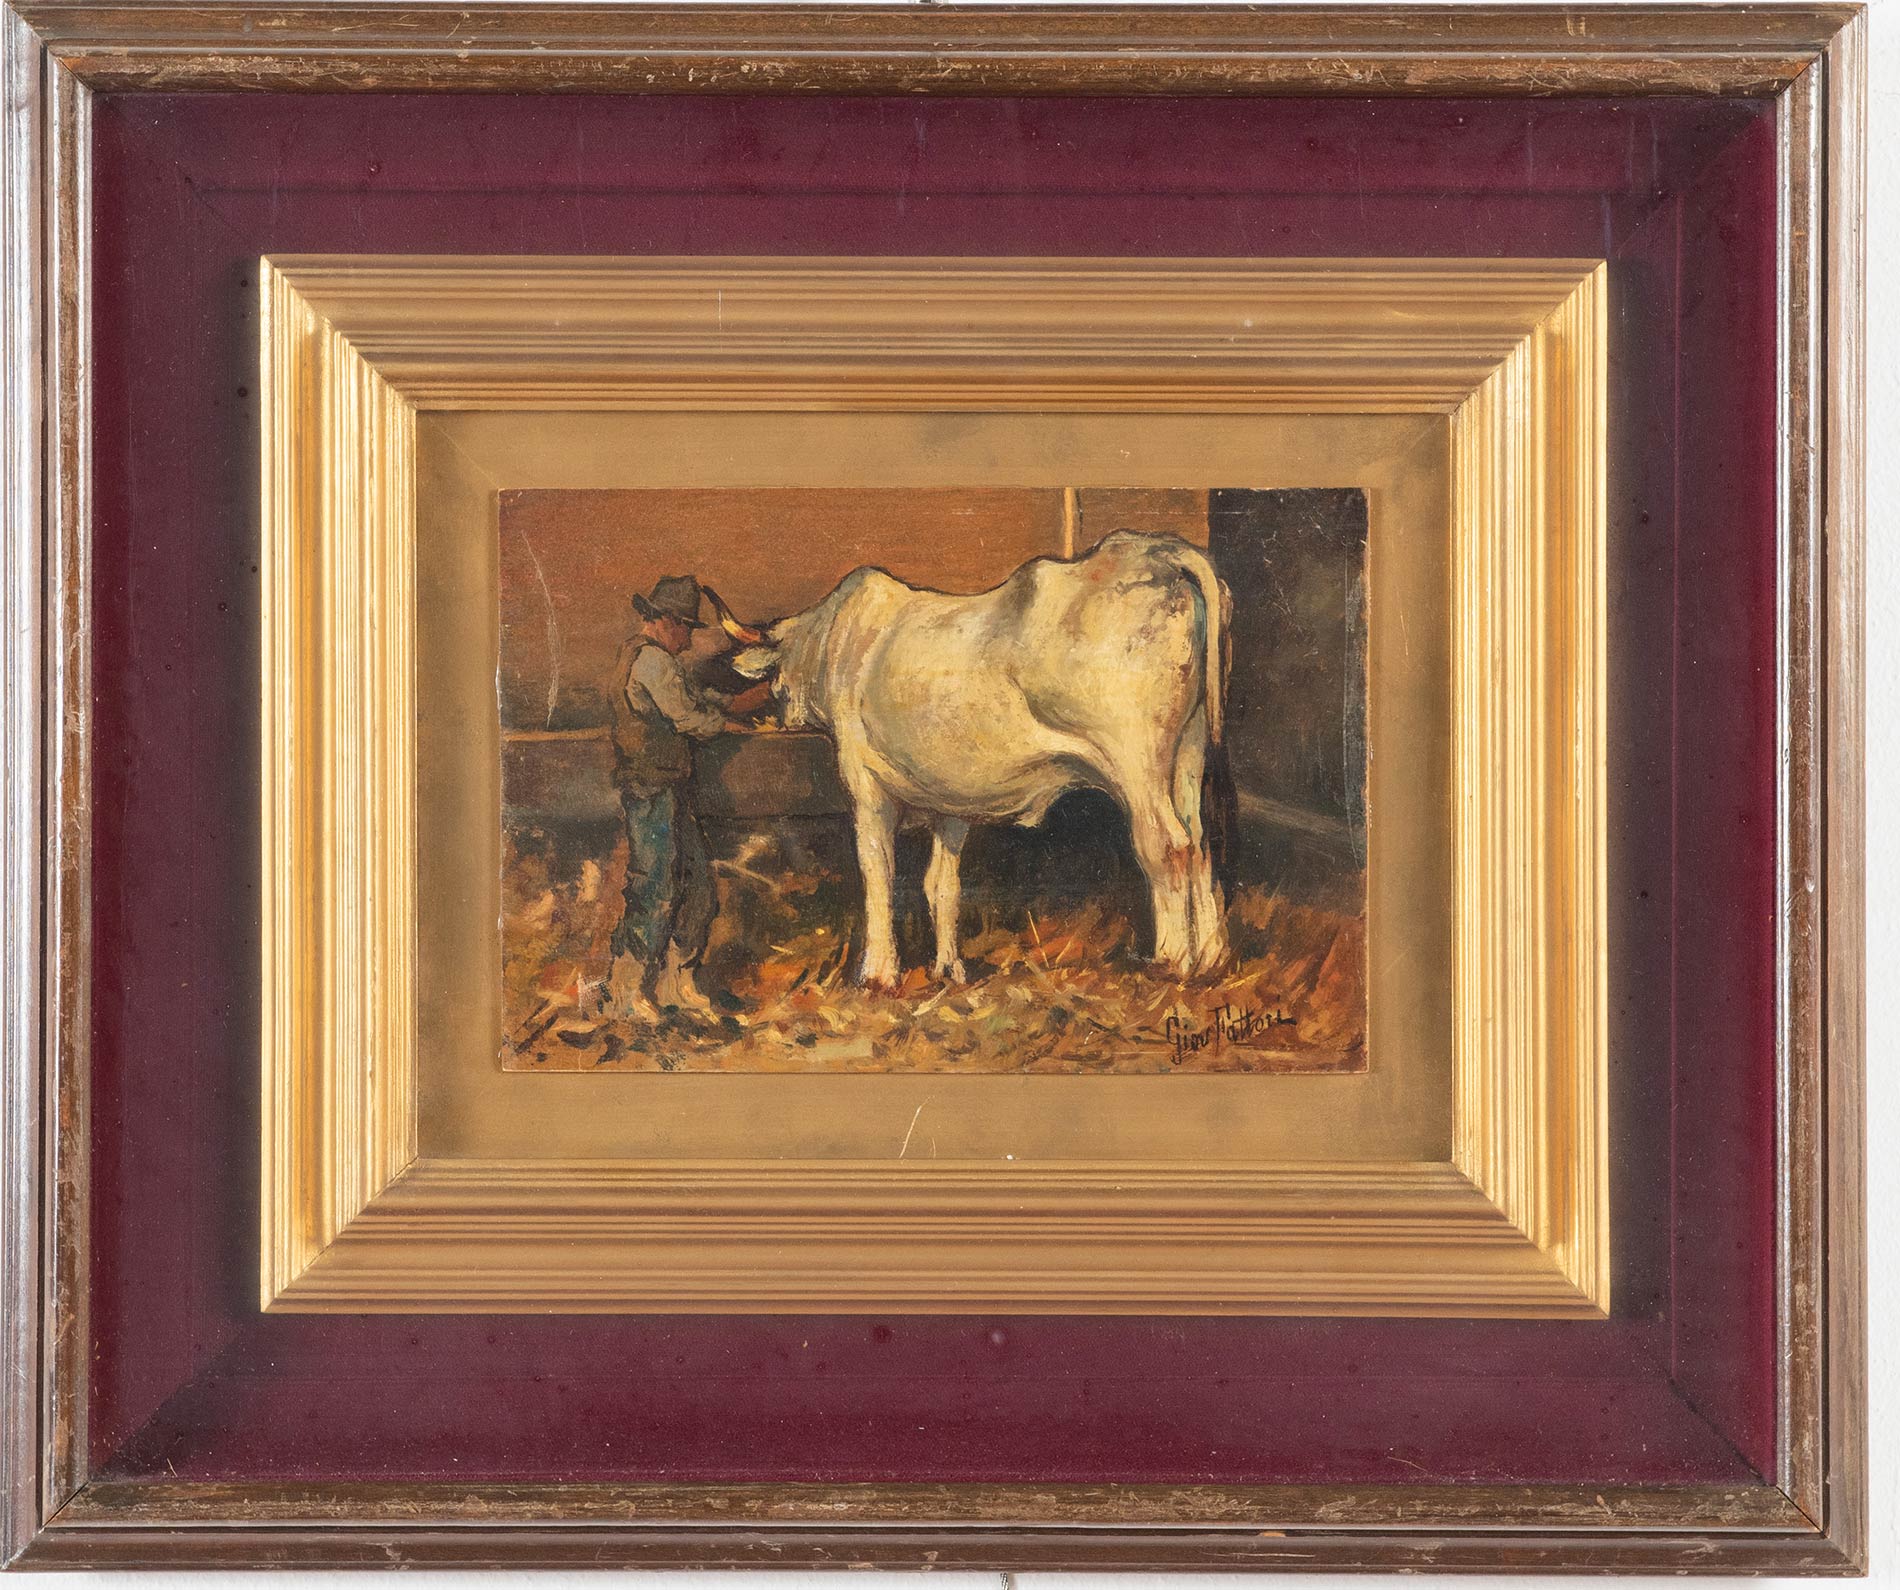 Giovanni Fattori (Livorno 1825 - Firenze 1908), attribuito a, “La mucca”.